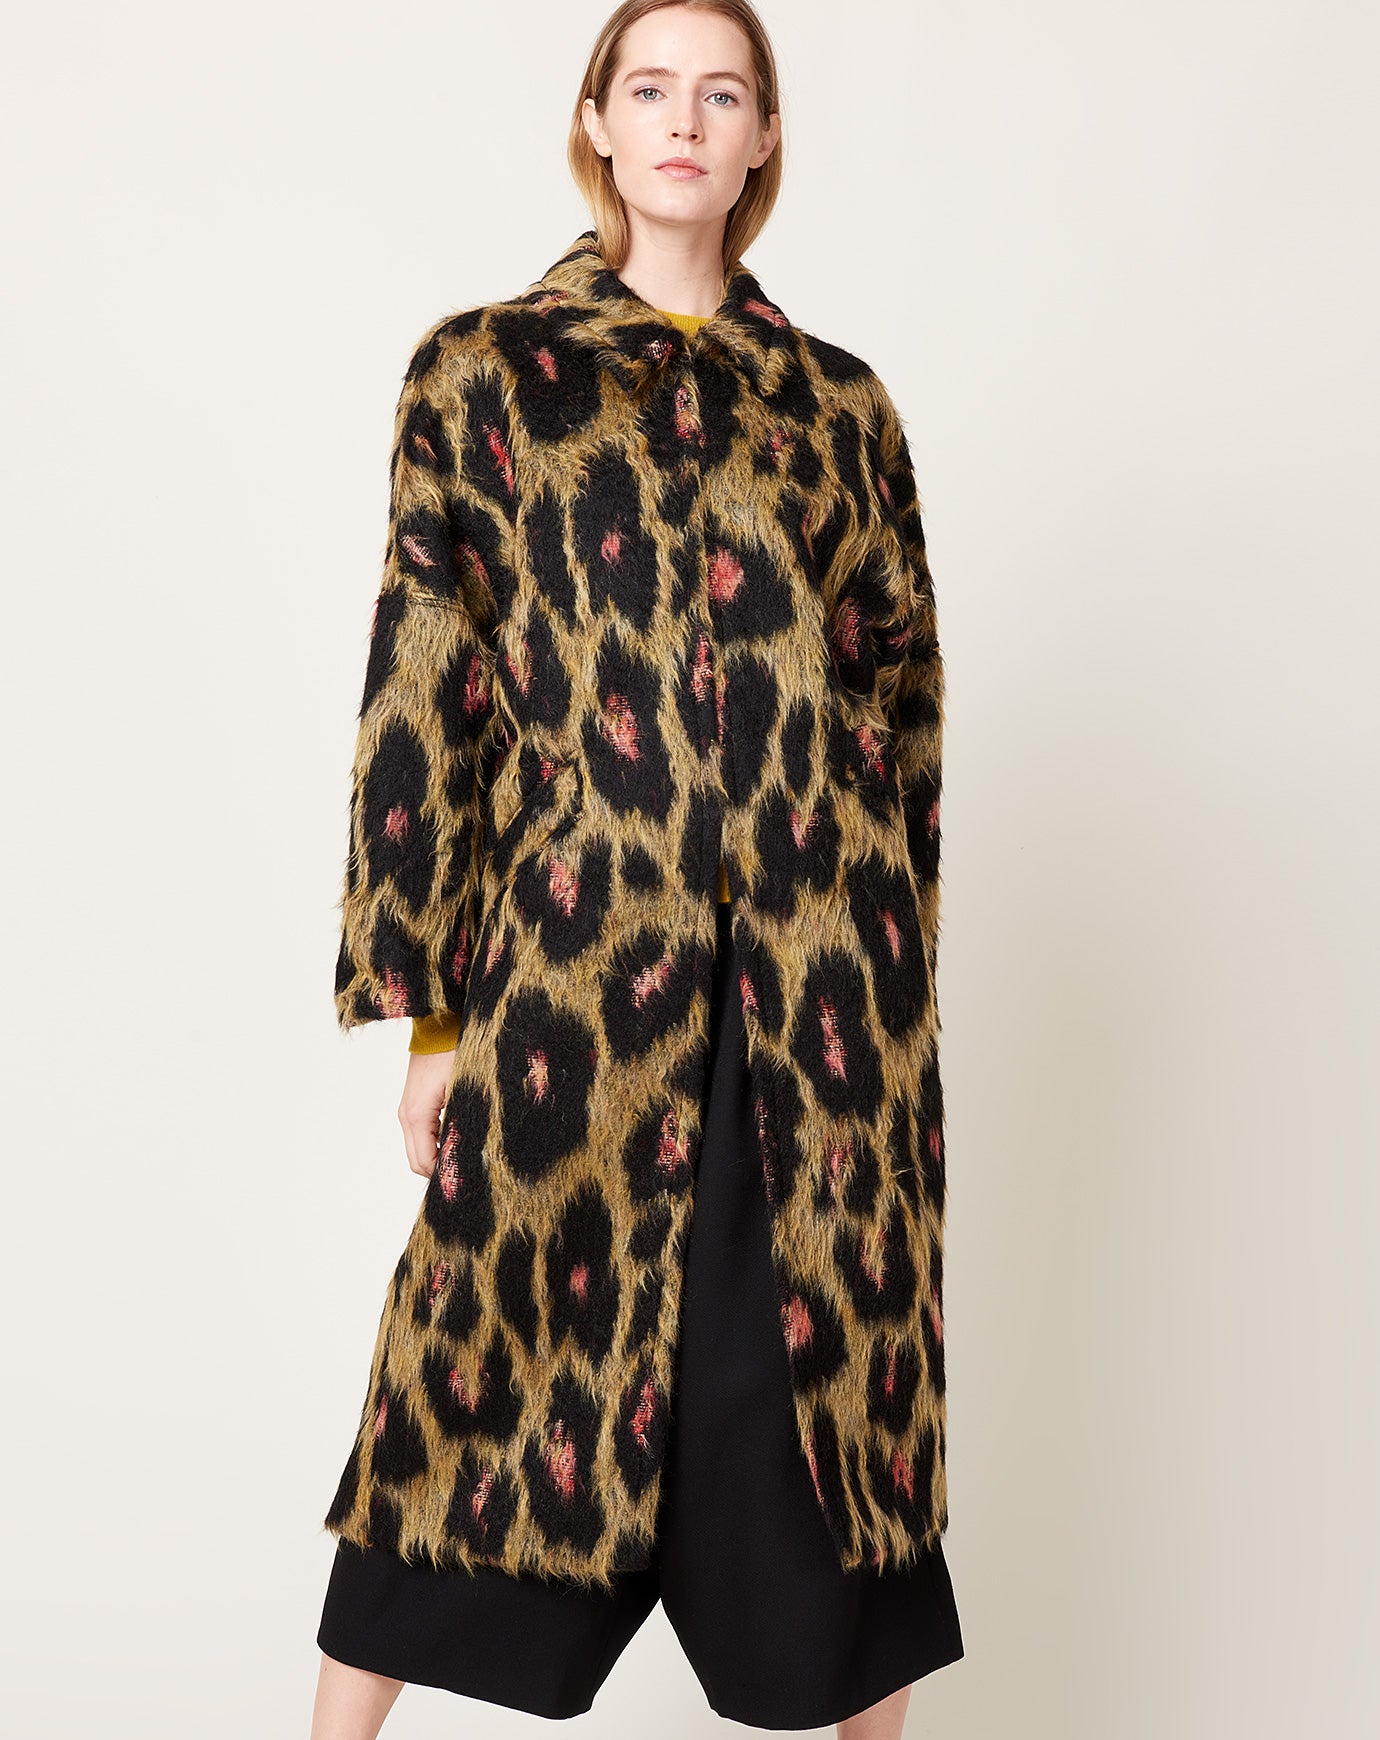 Rachel Comey Pantheon Coat in Brushed Leopard